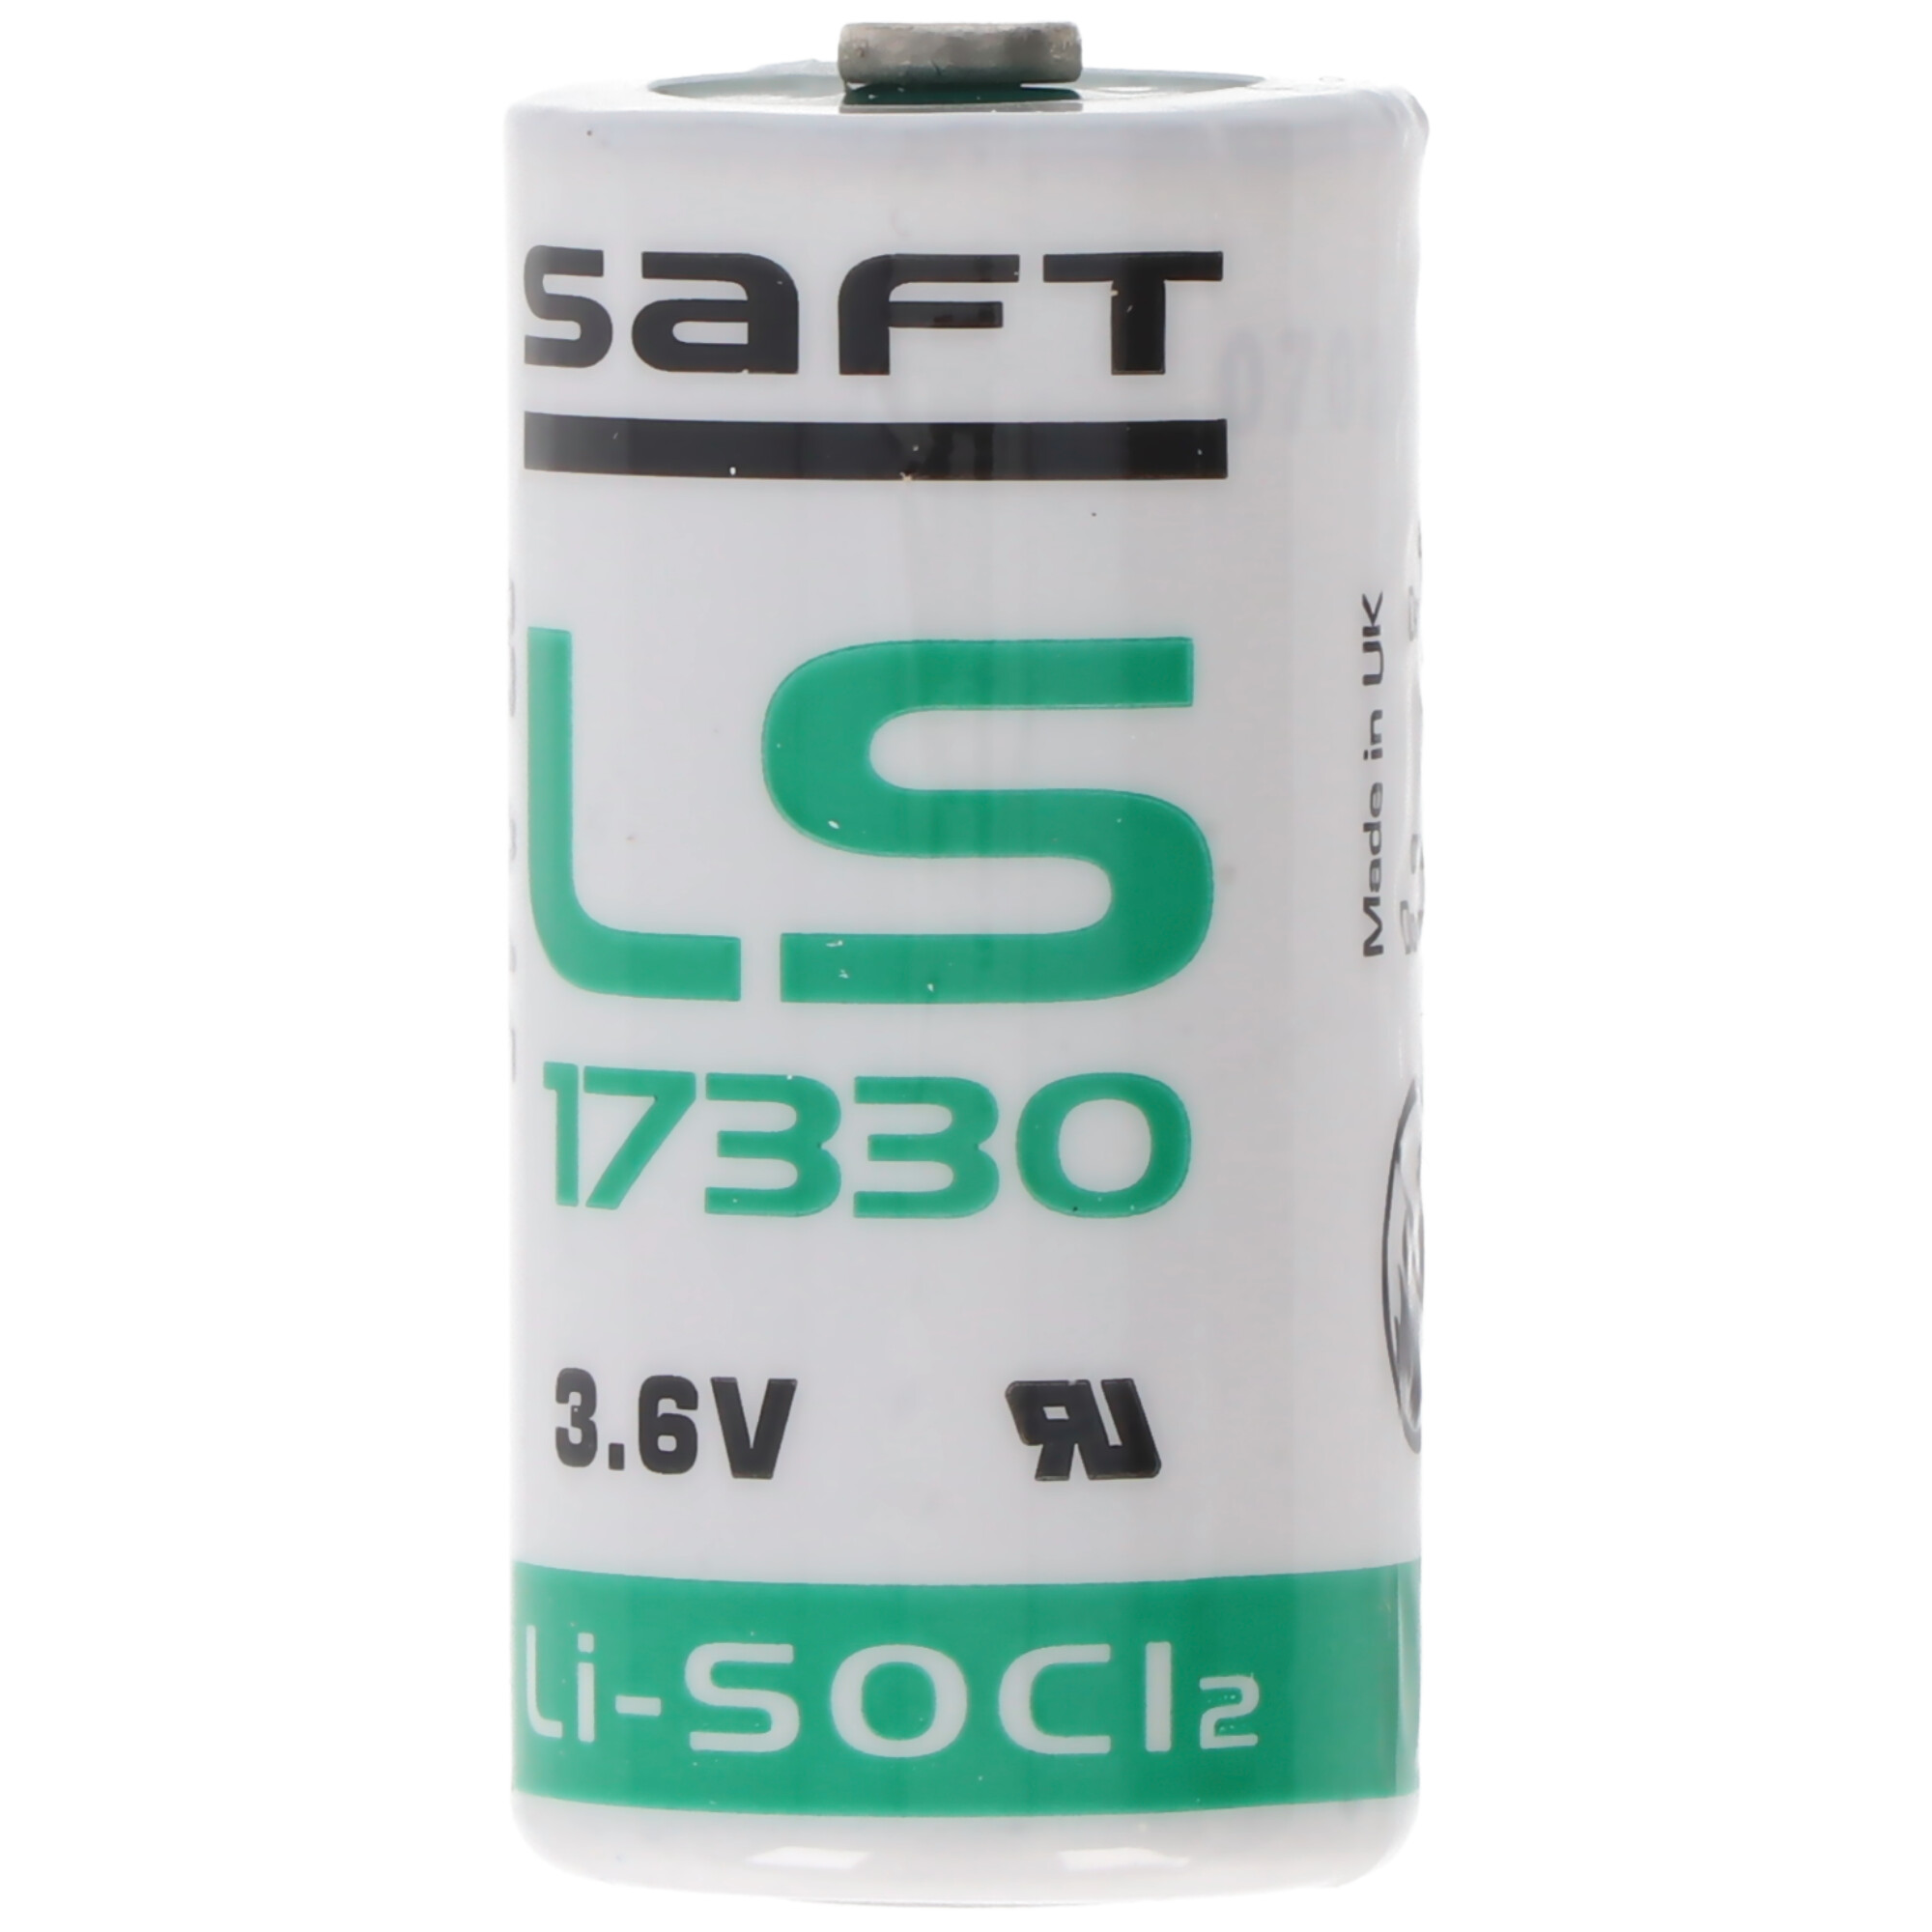 Saft Lithium LS-17330 3,6 V 2,1 Ah